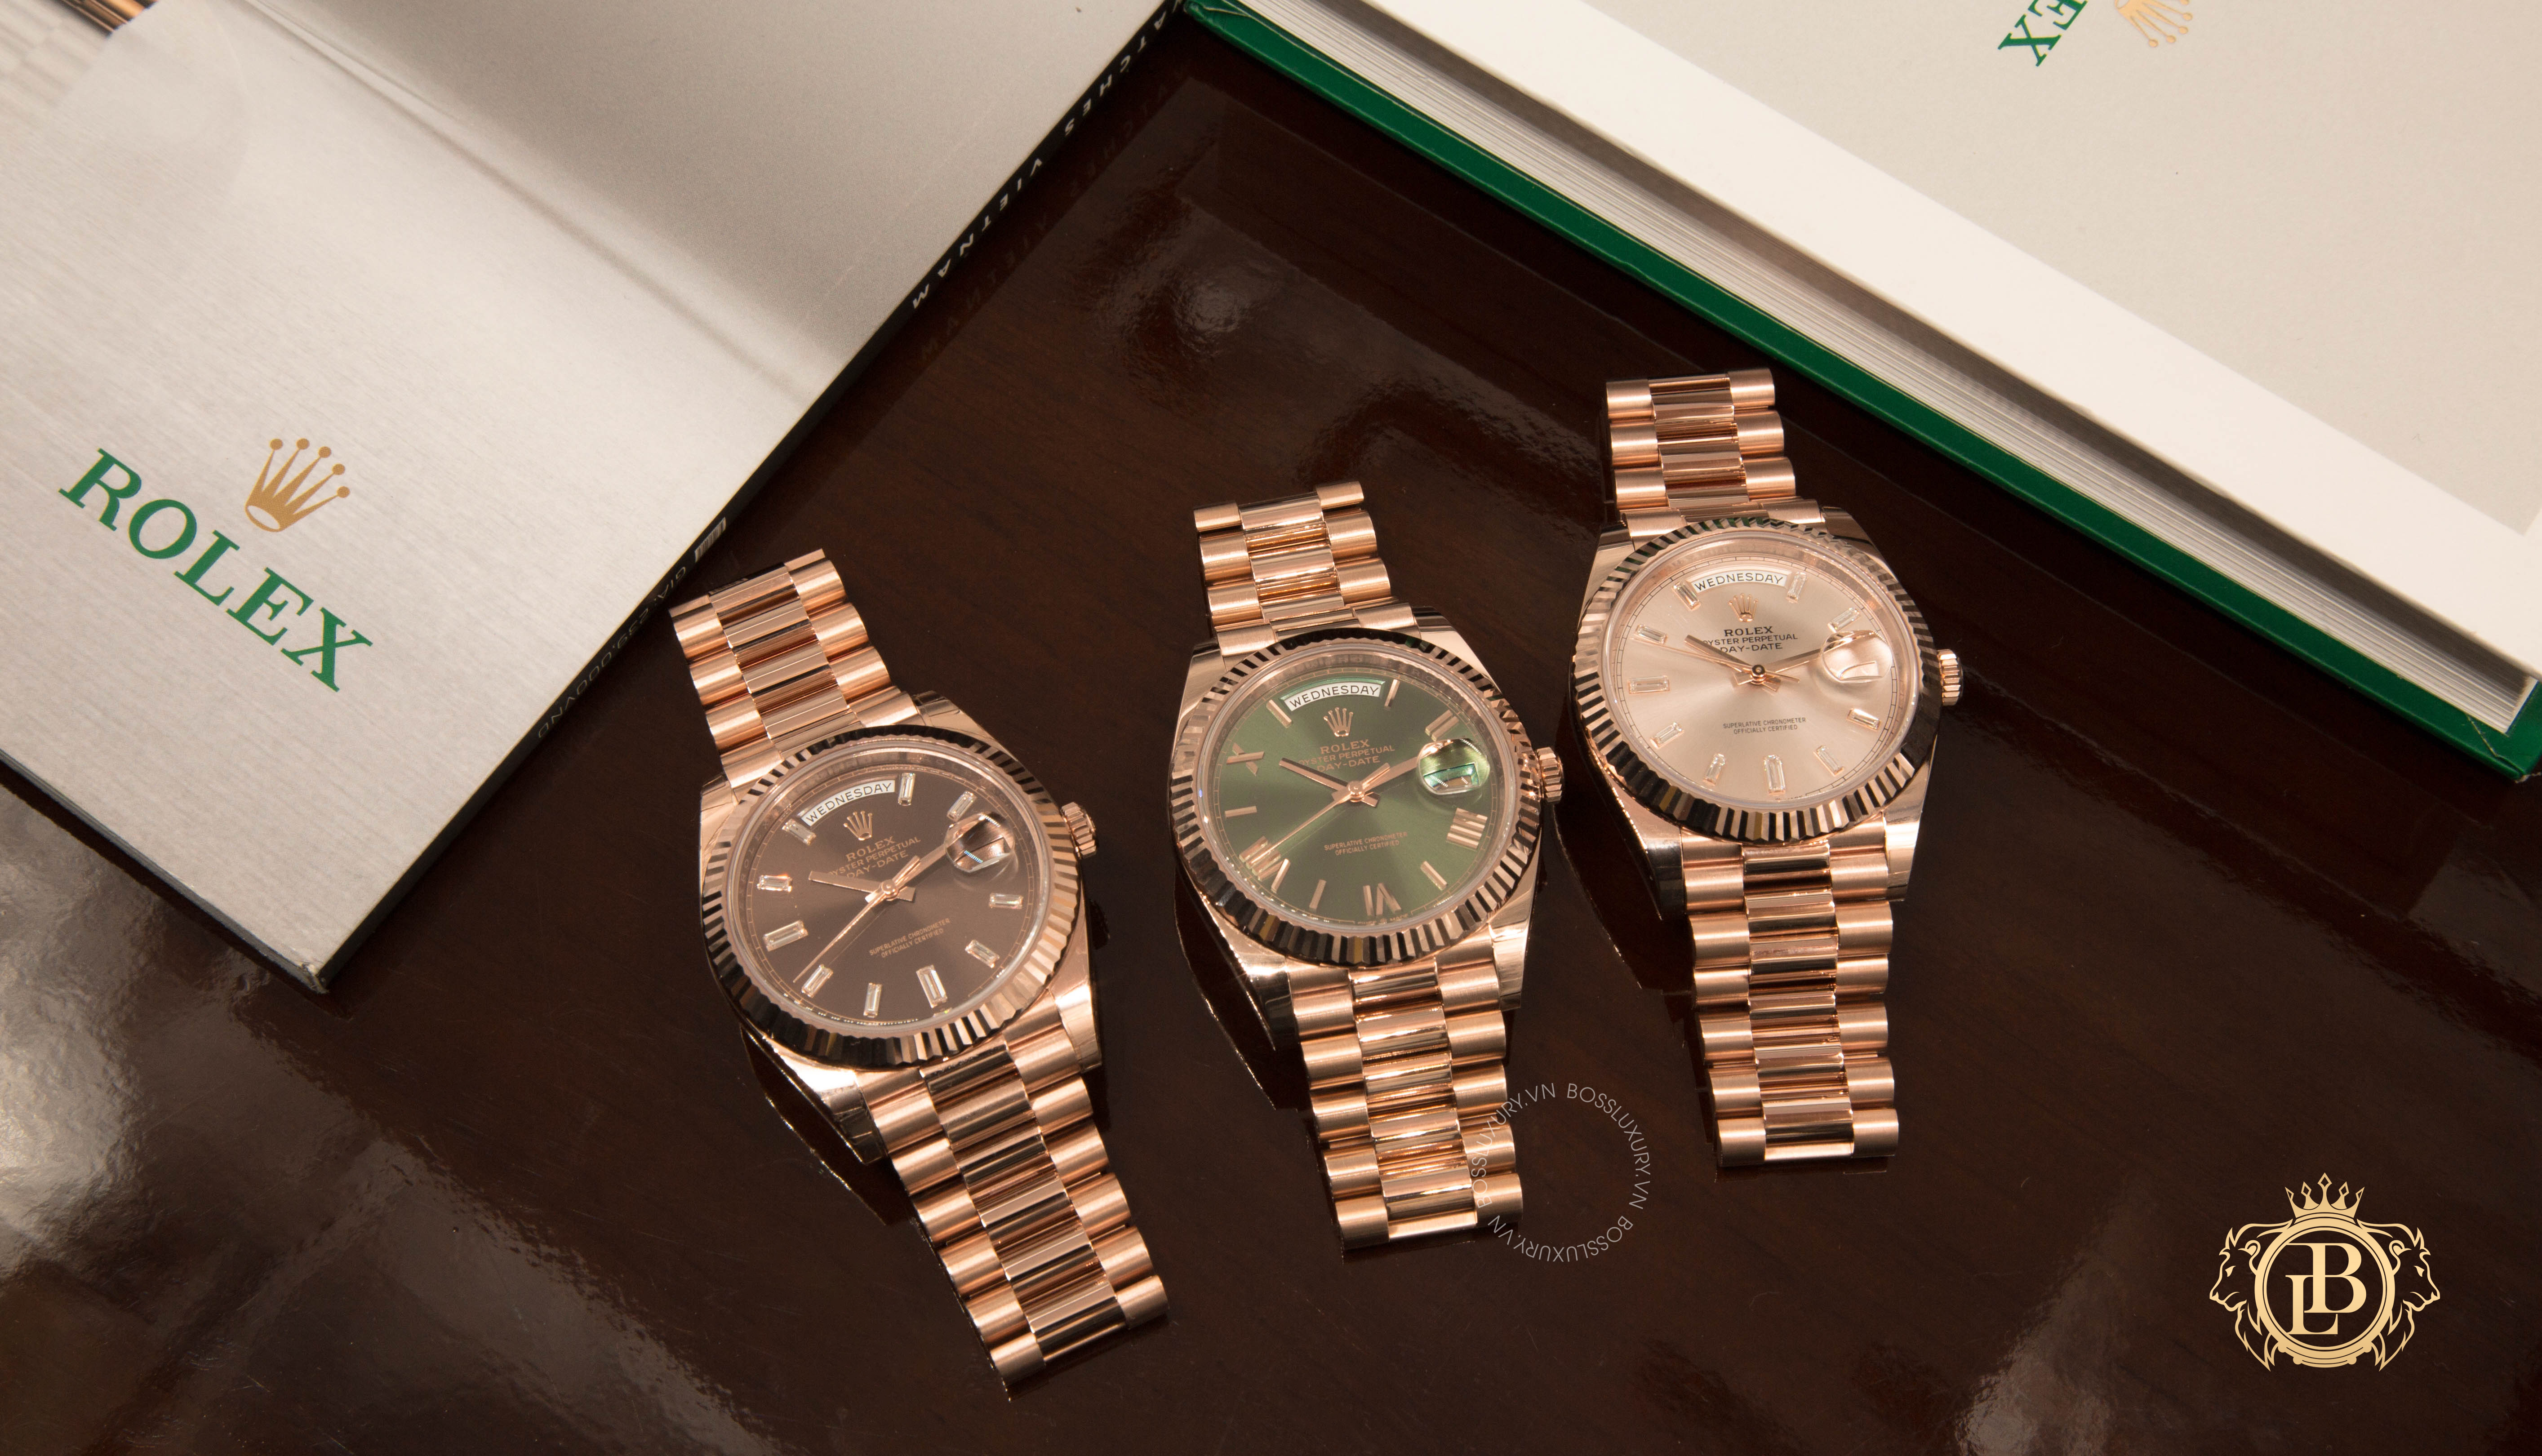 Địa chỉ bán đồng hồ Rolex chính hãng ở đâu uy tín tại Hà Nội